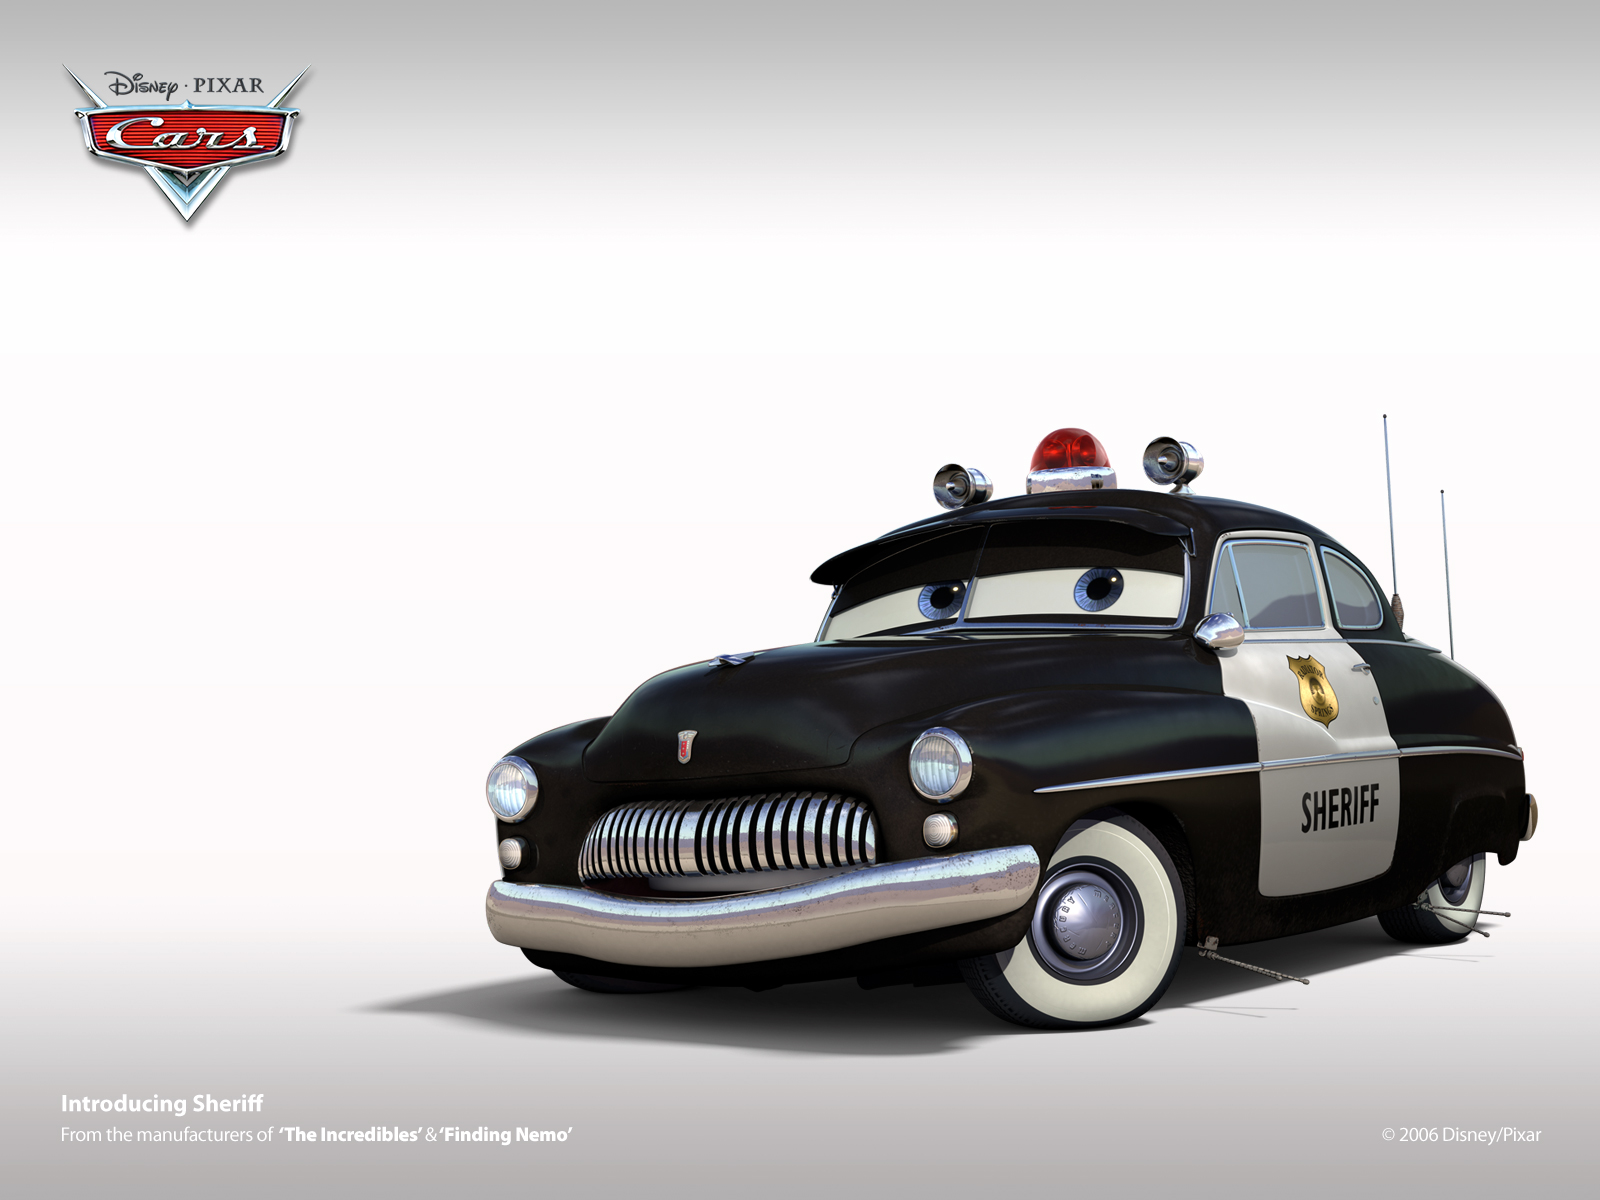 cars pixar wallpaper cars pixar 1600x1200